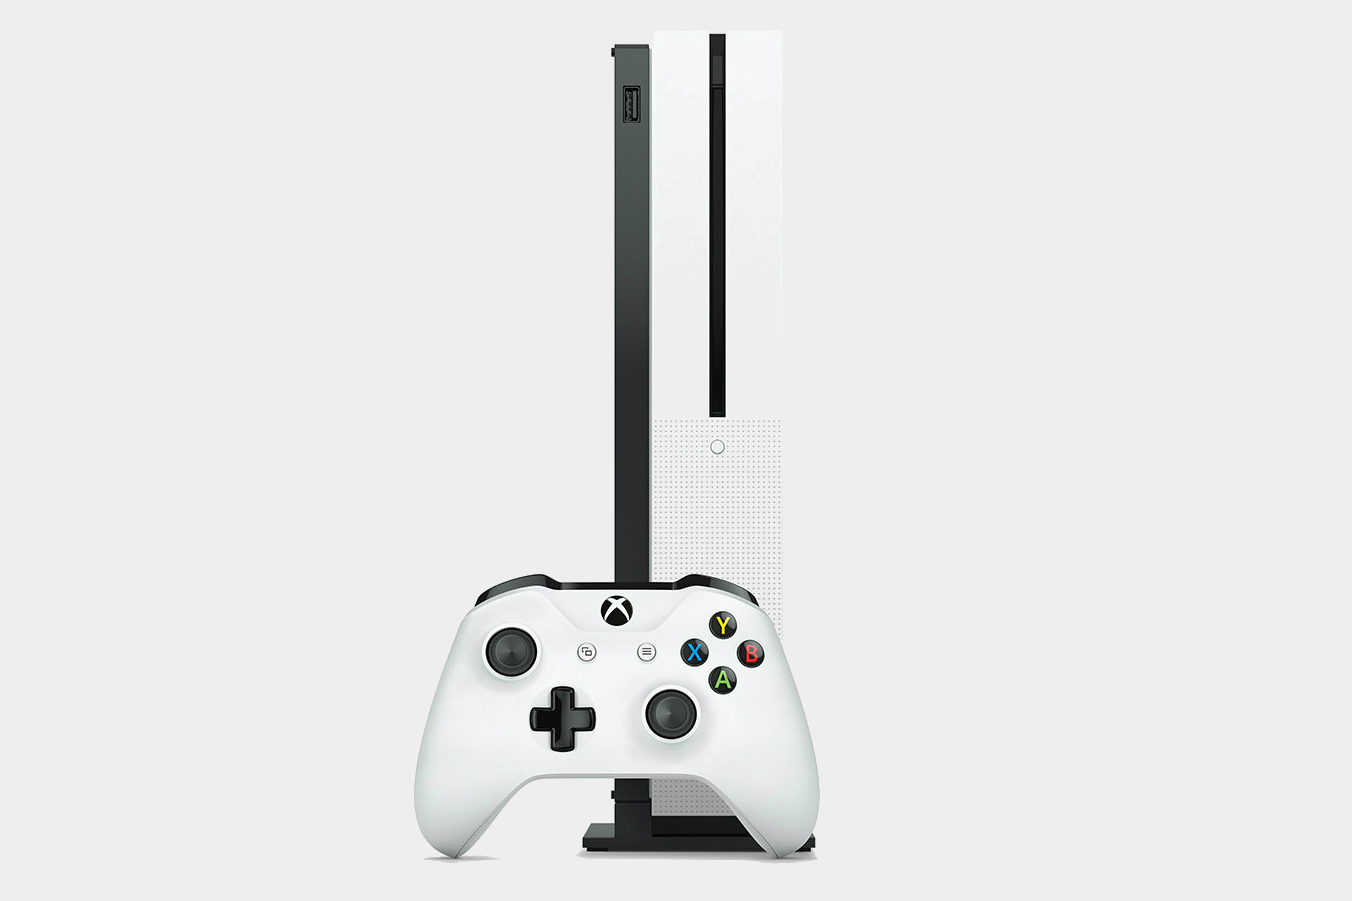 PS4 Slim vs. Xbox One S: Spec Comparison